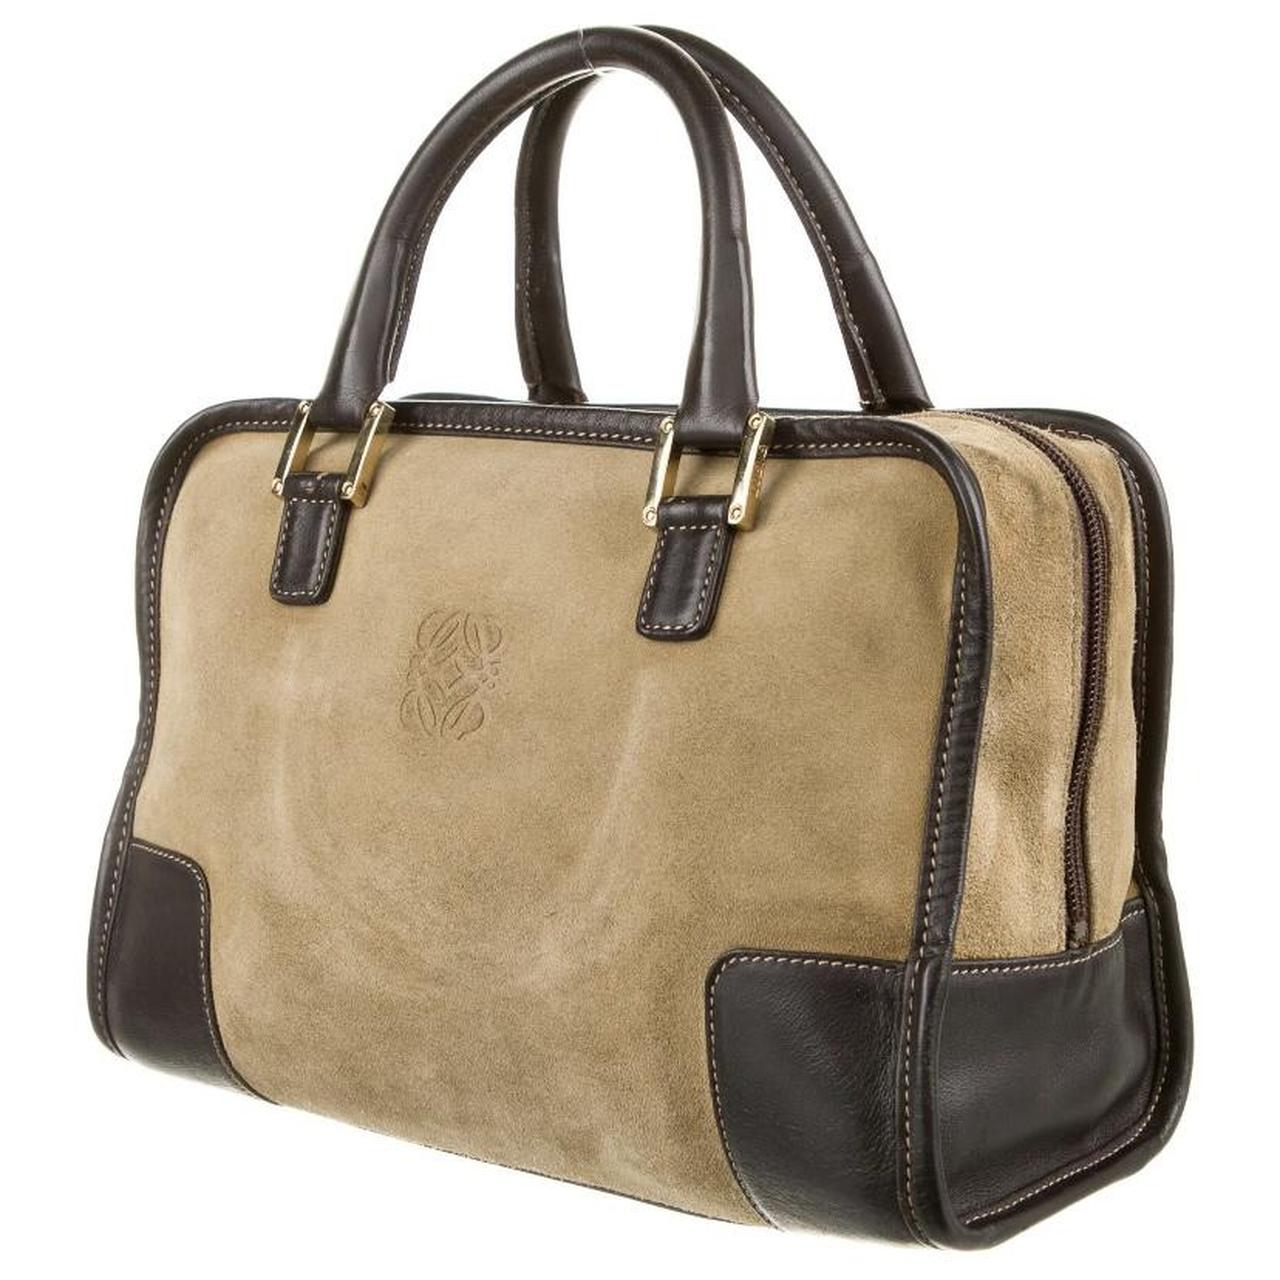 Loewe Women's Tan and Brown Bag (2)